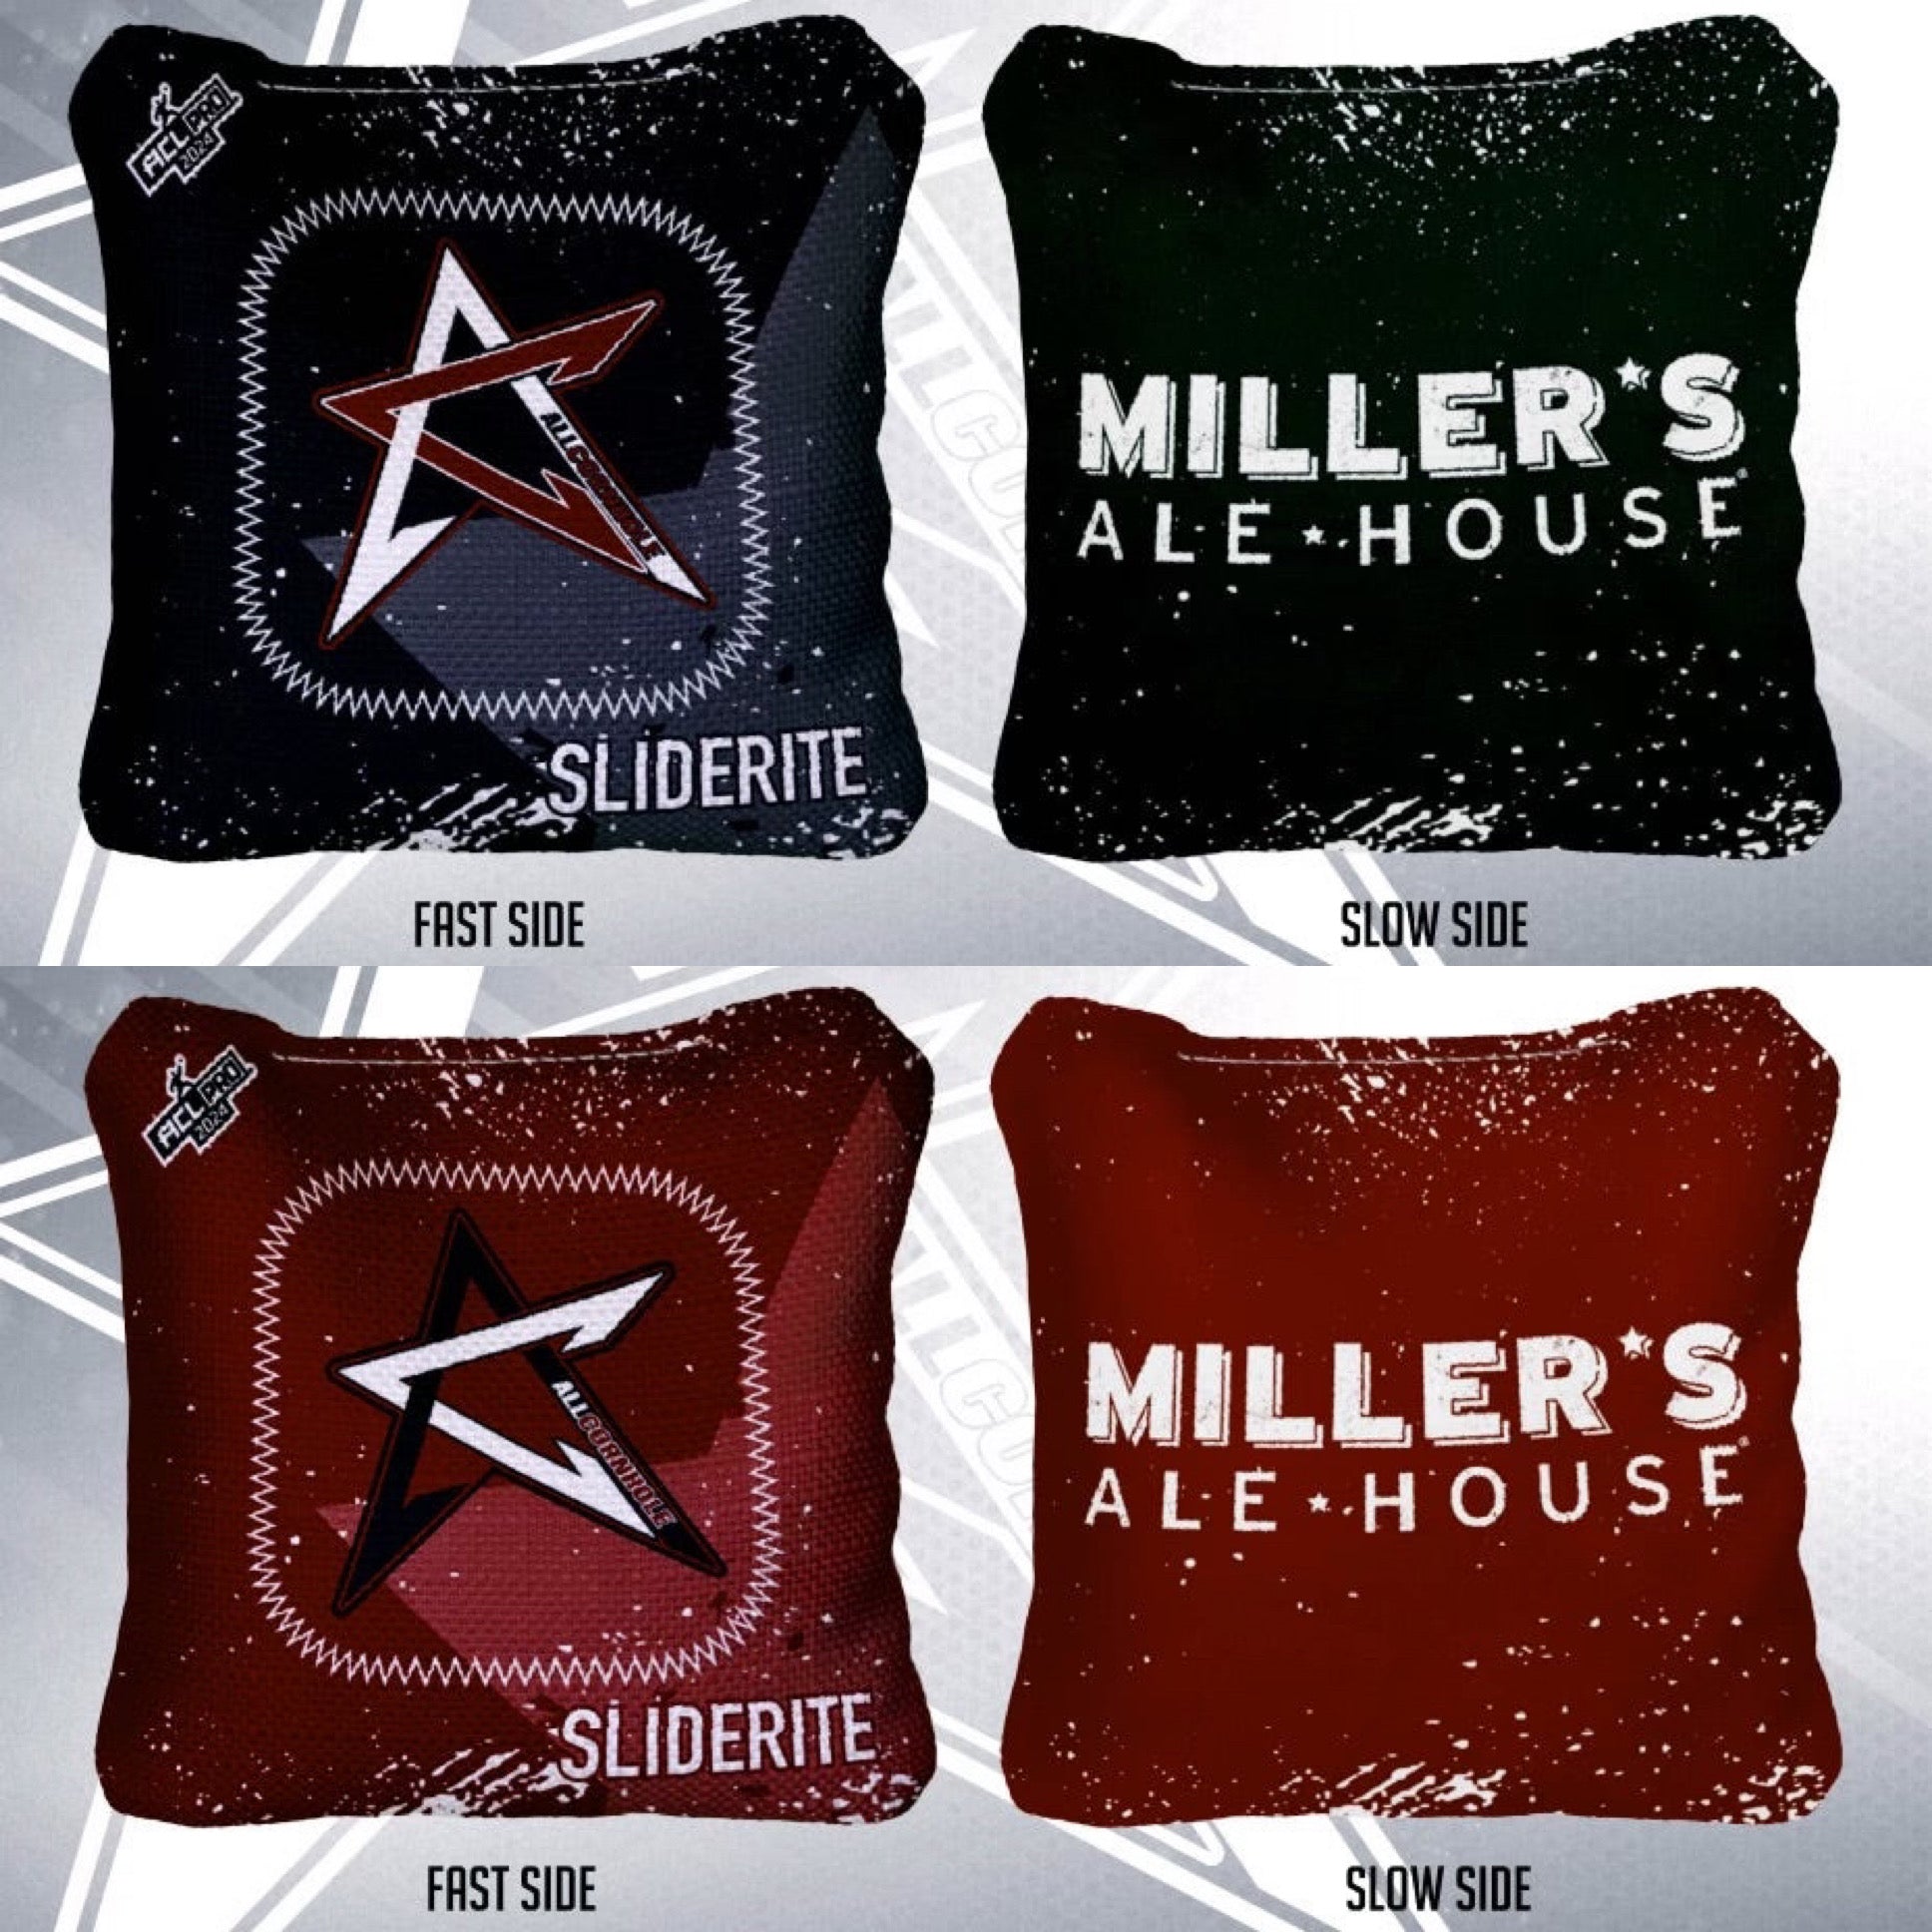 AllCornhole Slide Rites - Set of 4 Bags - Miller's Ale House